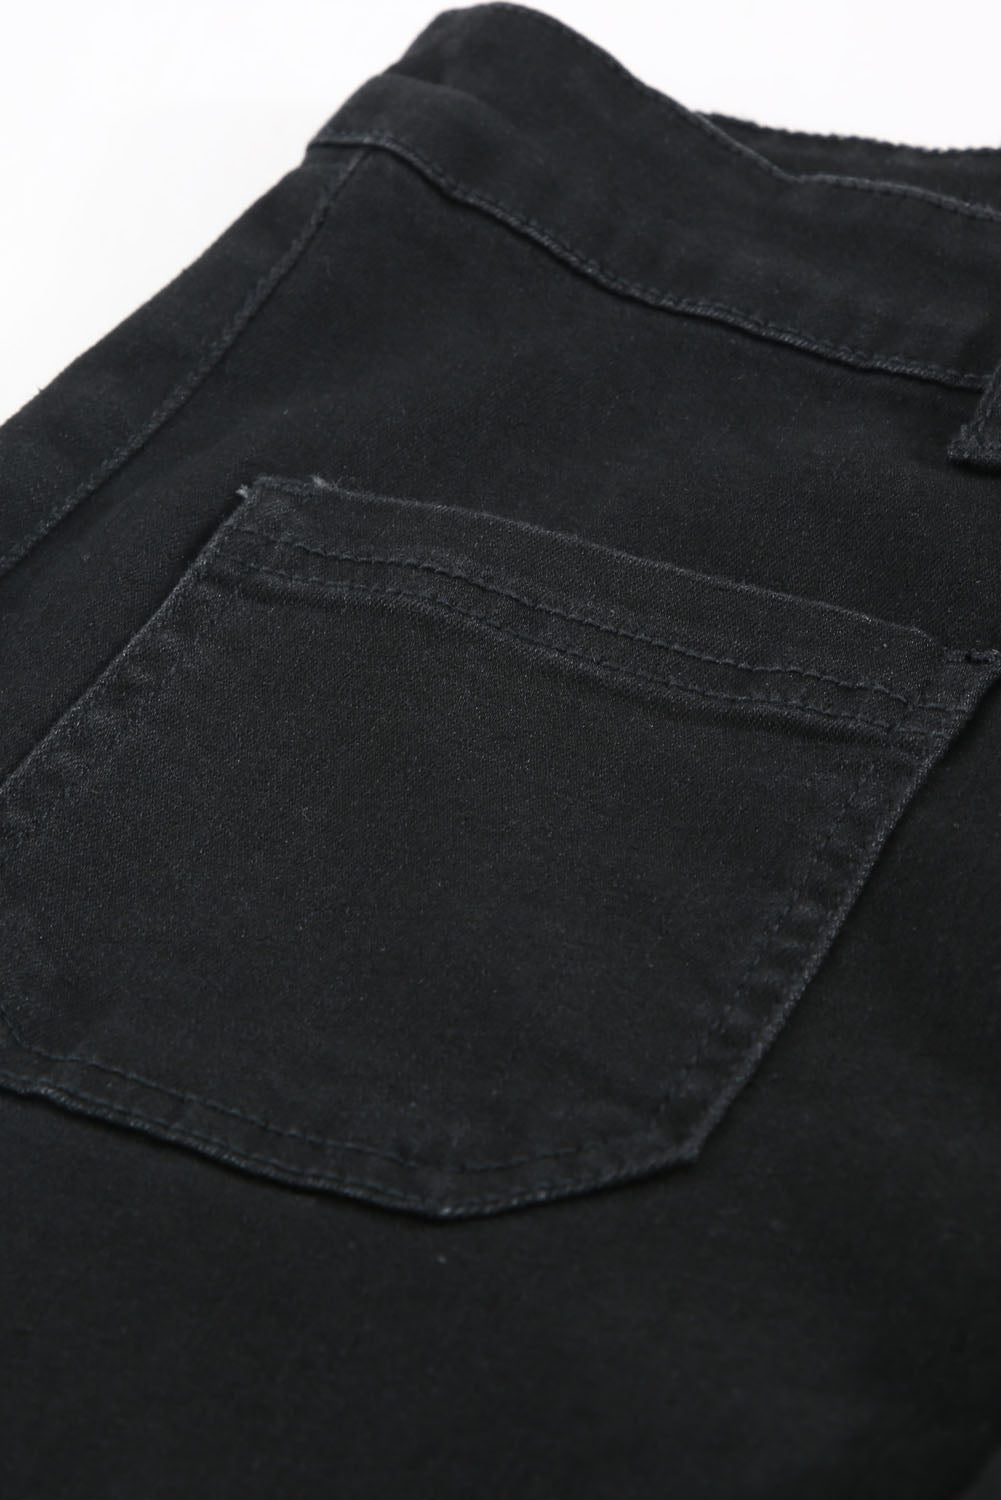 Black Vintage Casual Pocket Flared Jeans Jeans JT's Designer Fashion